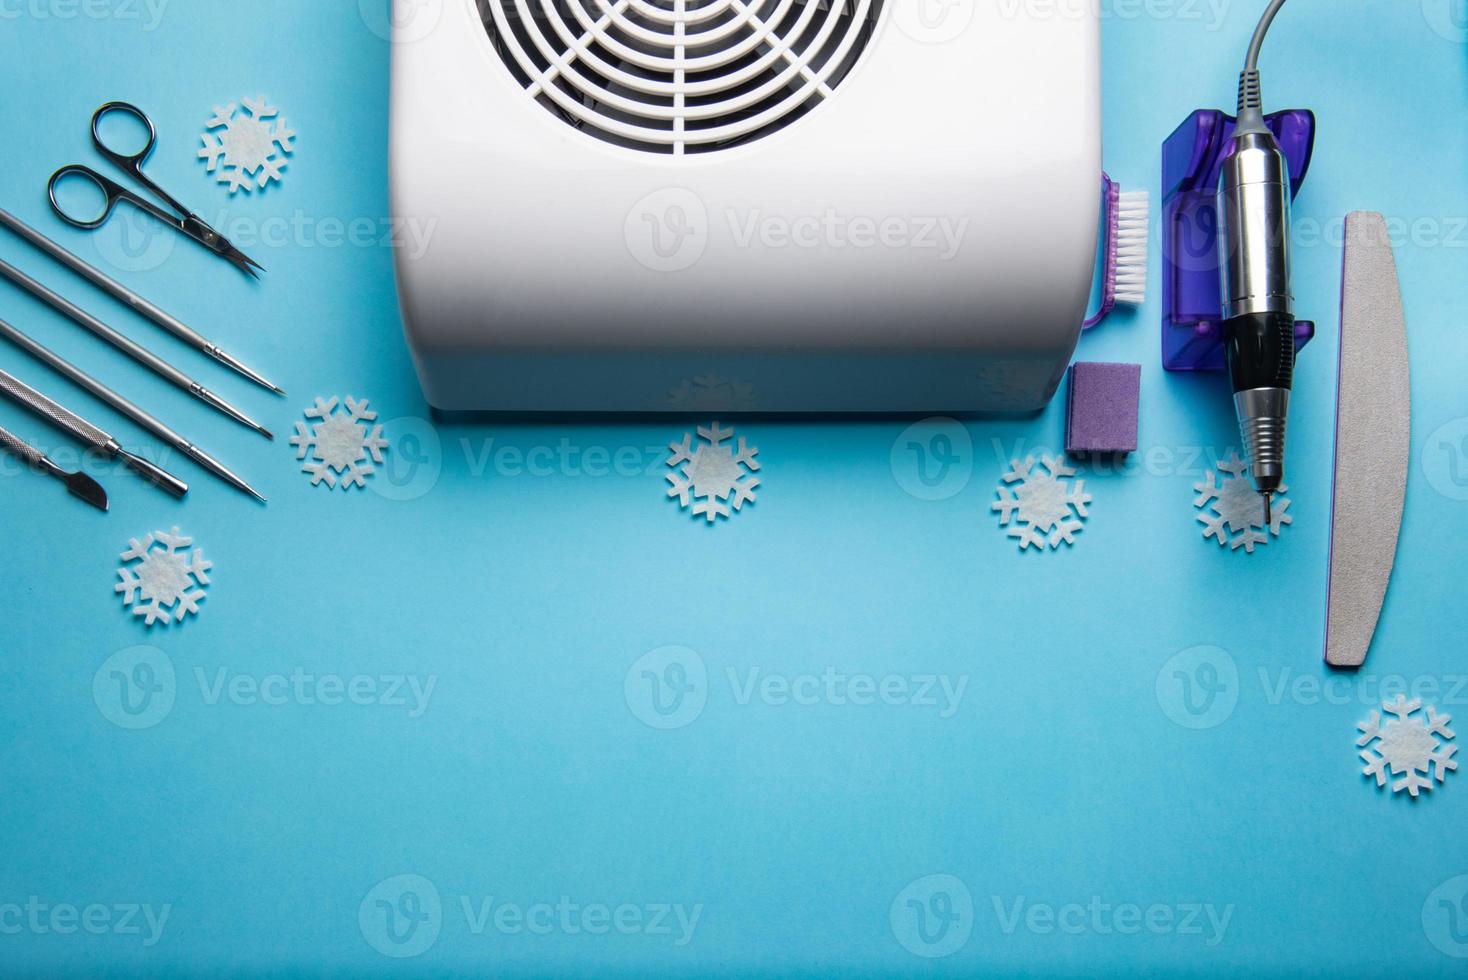 vista superior del equipo de manicura y pedicura sobre fondo azul de navidad foto